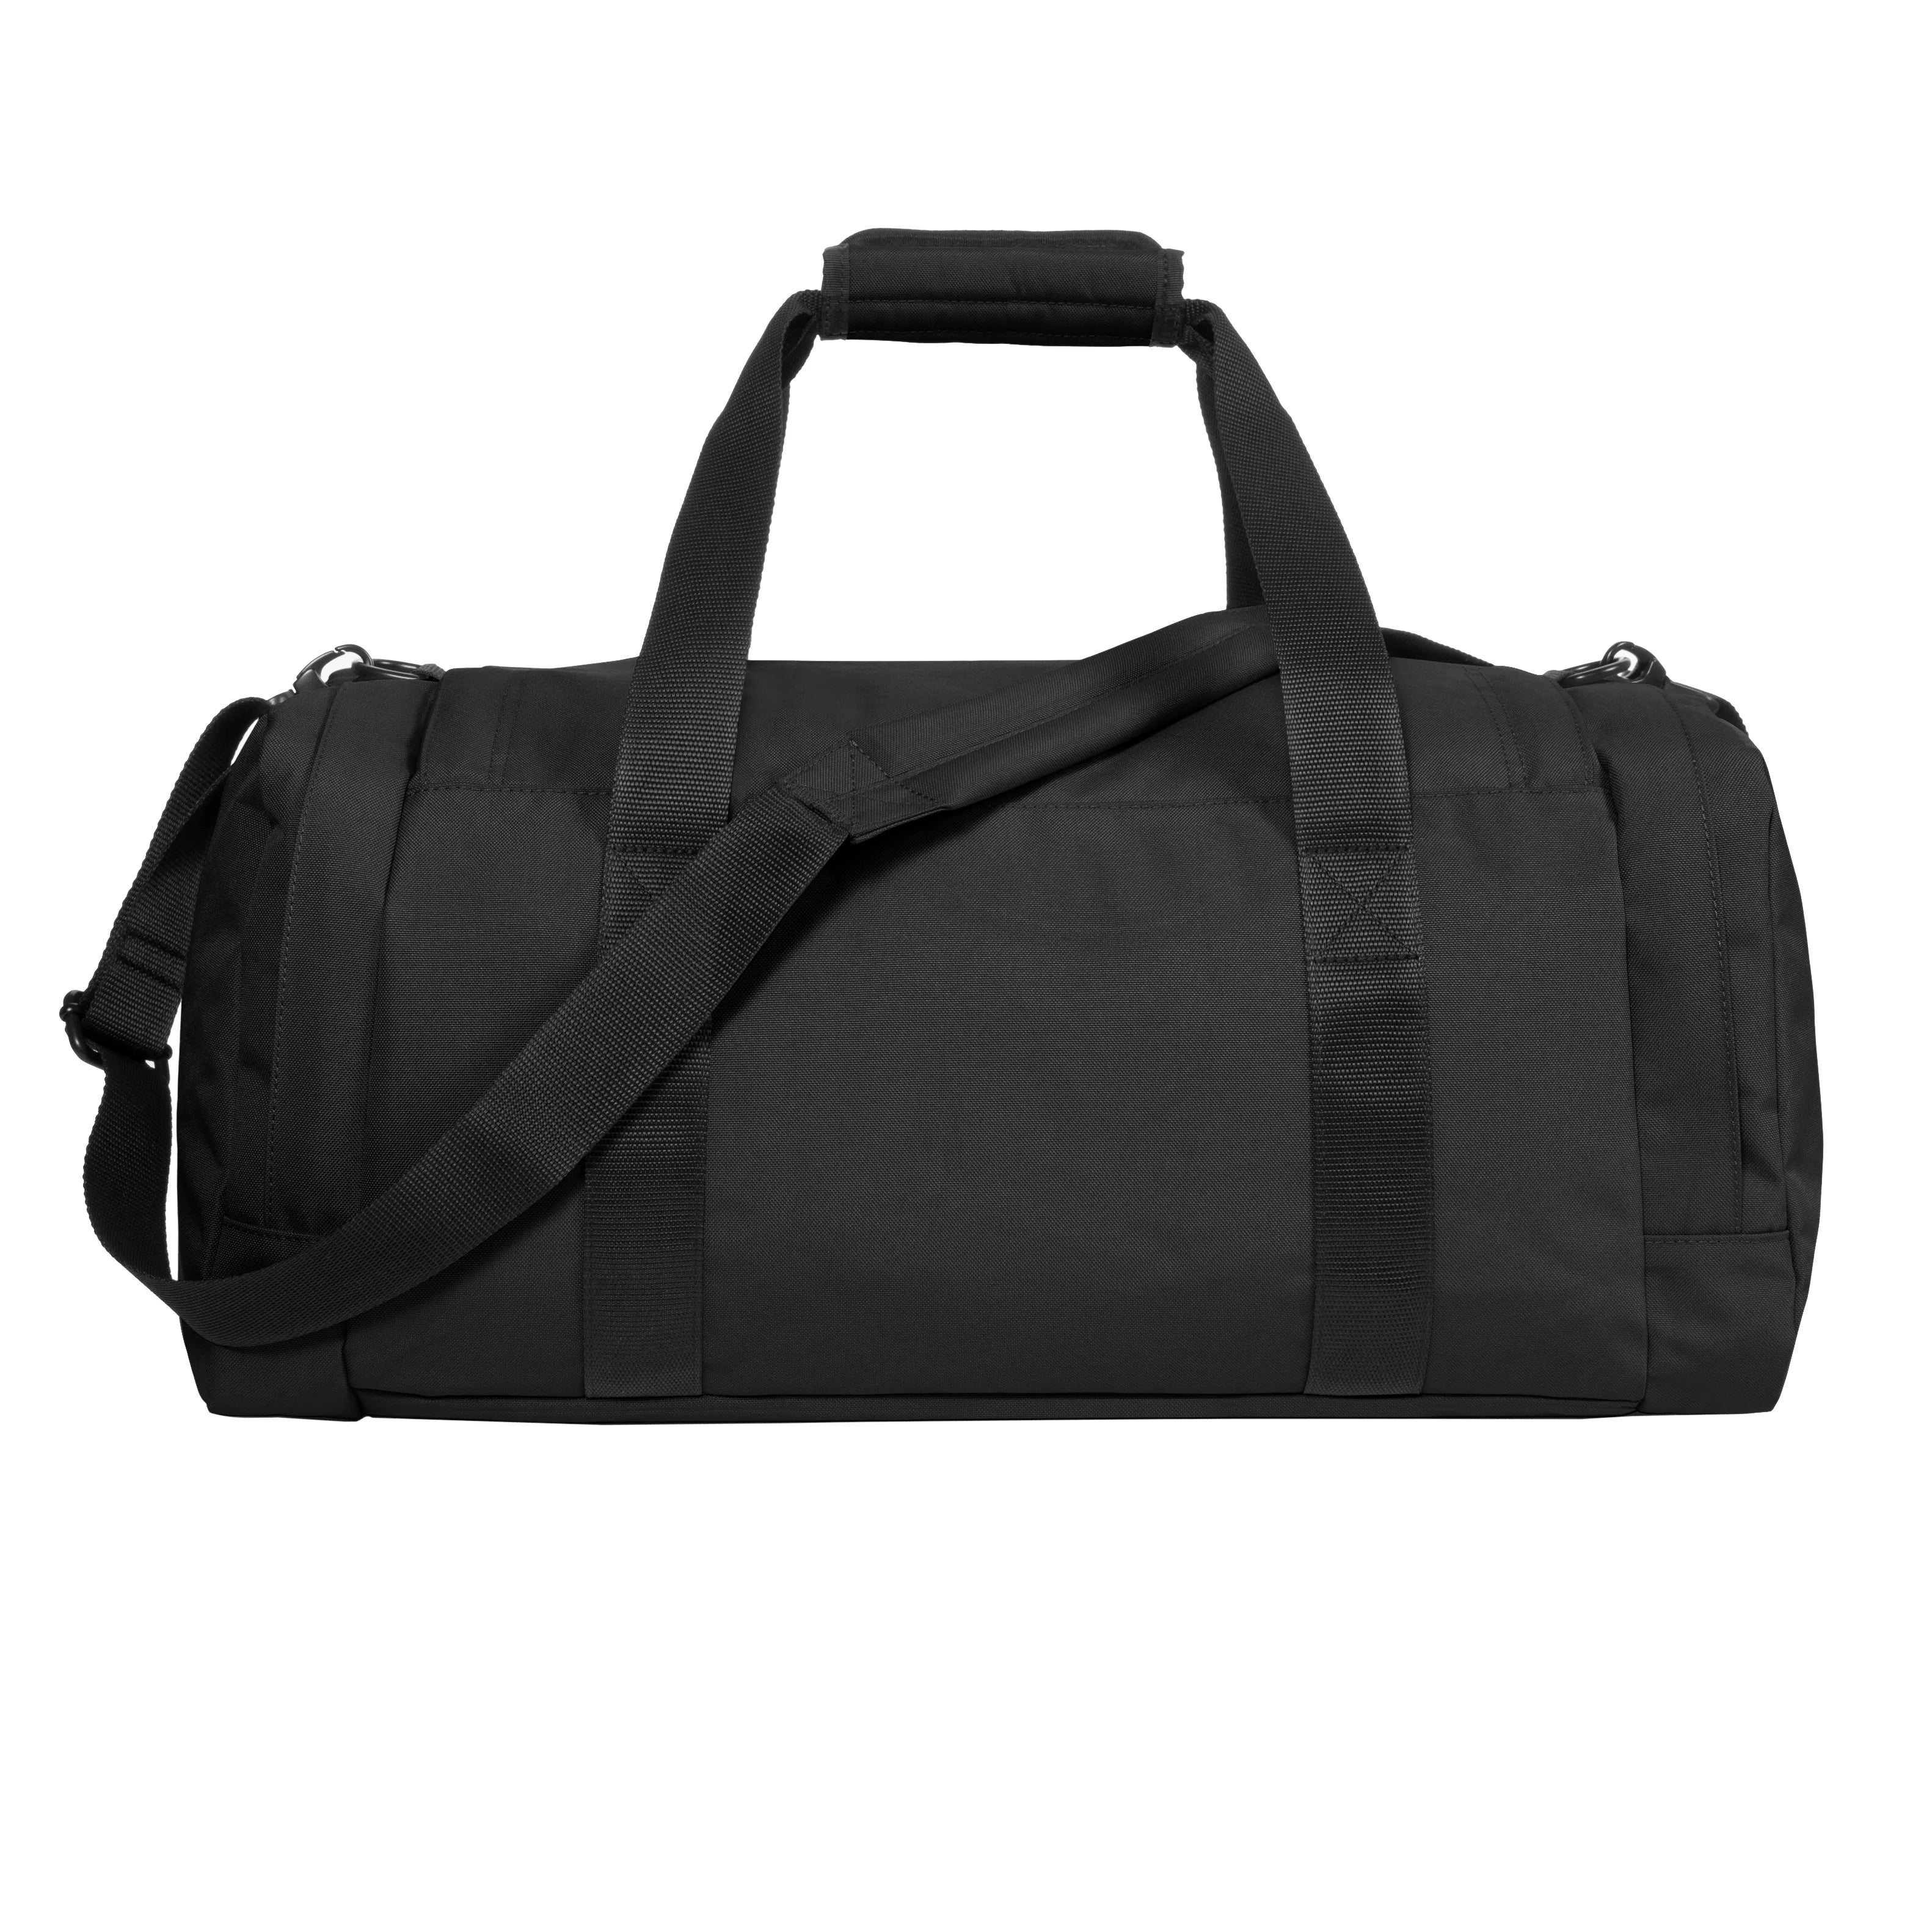 Eastpak Authentic Travel Reader S Plus sac de voyage 53 cm - noir